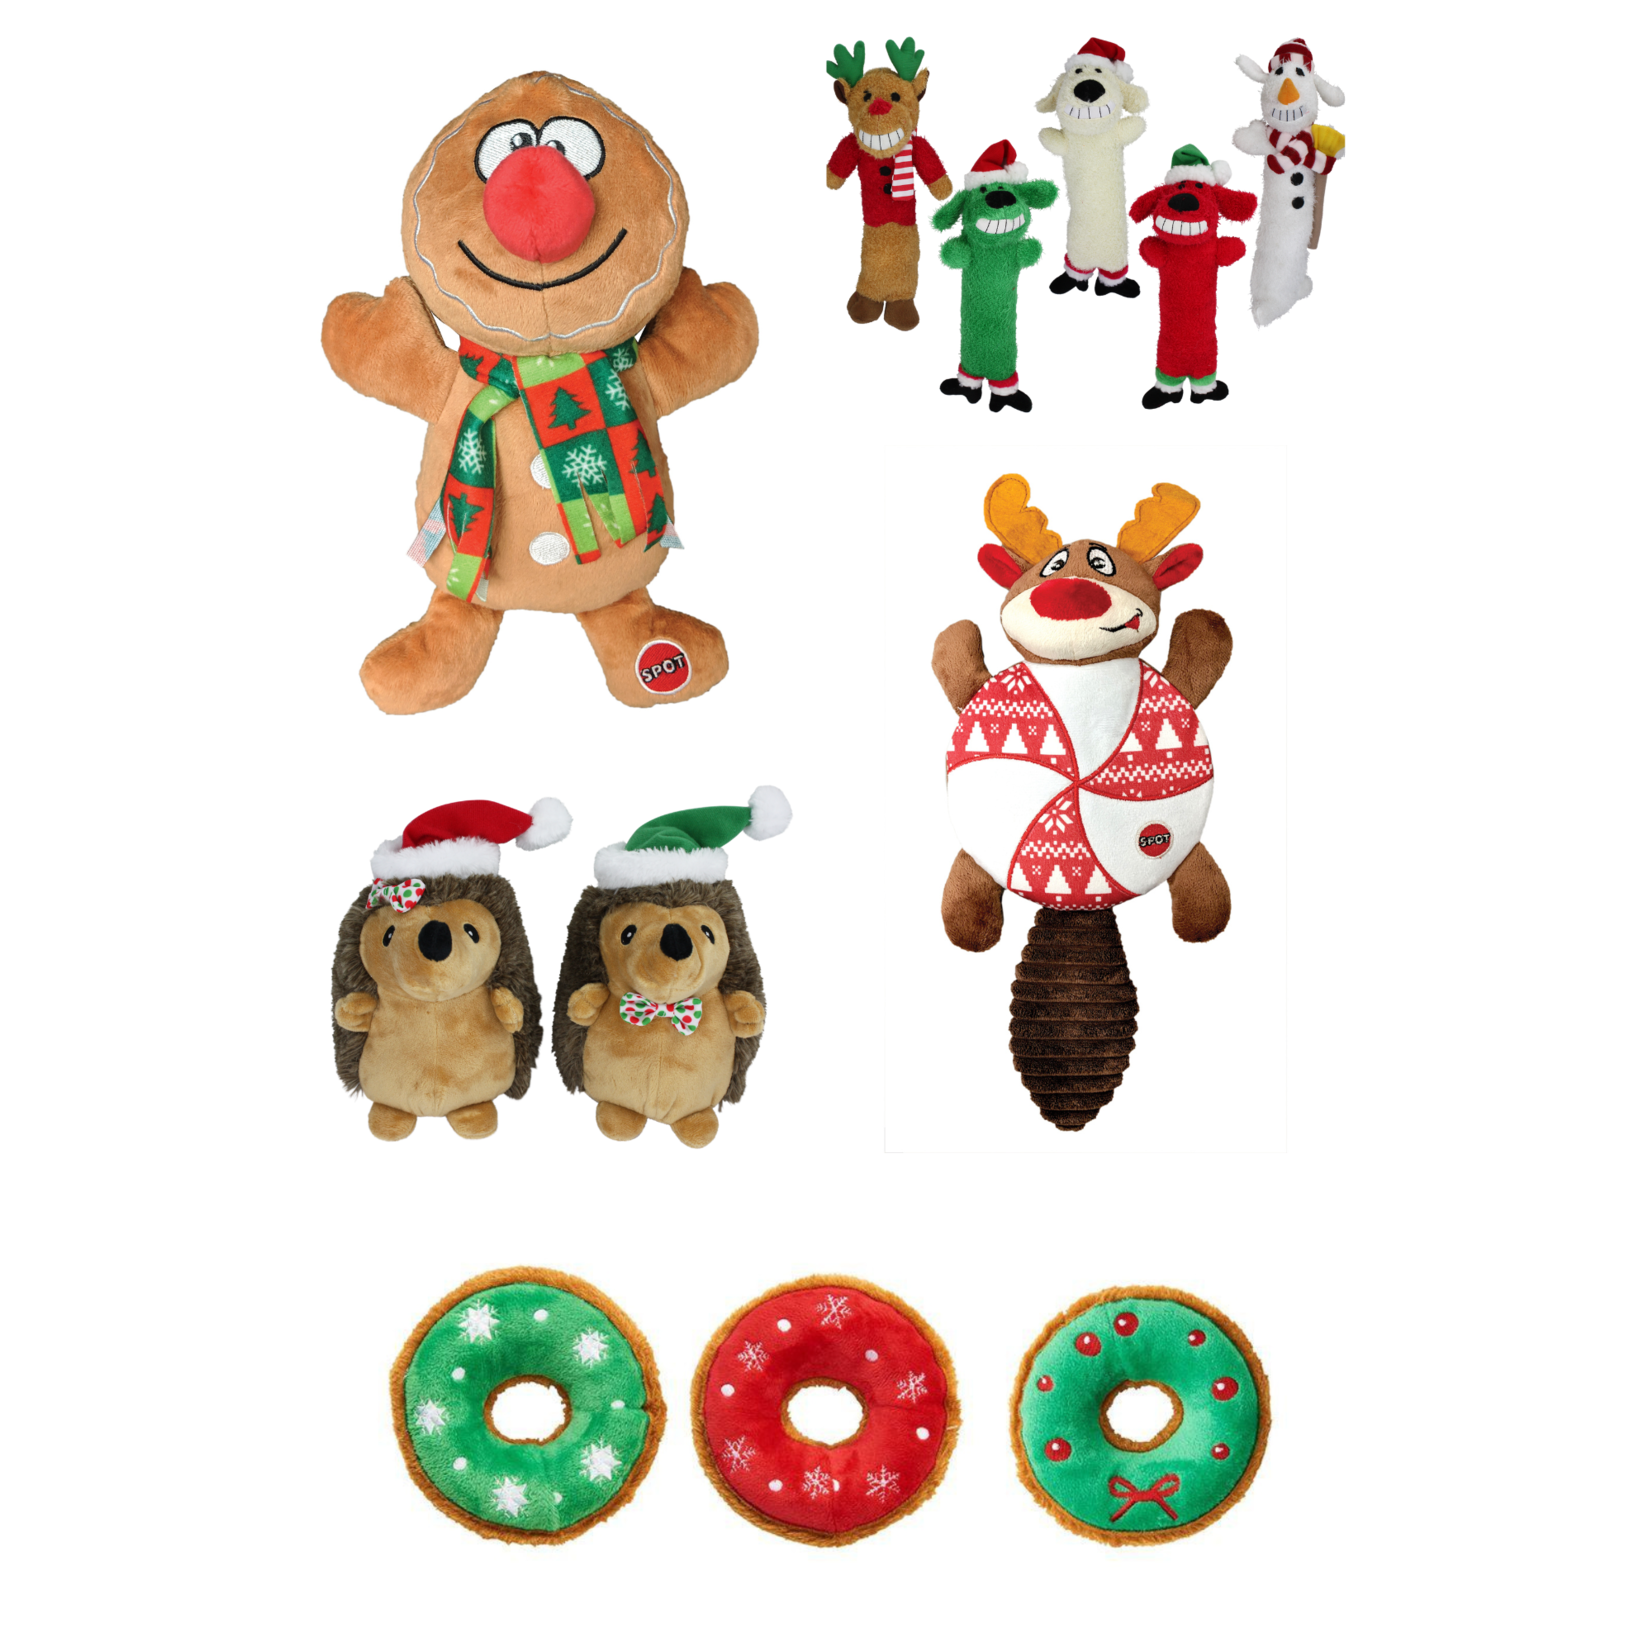 Assorted $5.99 Holiday Plush Dog Toys